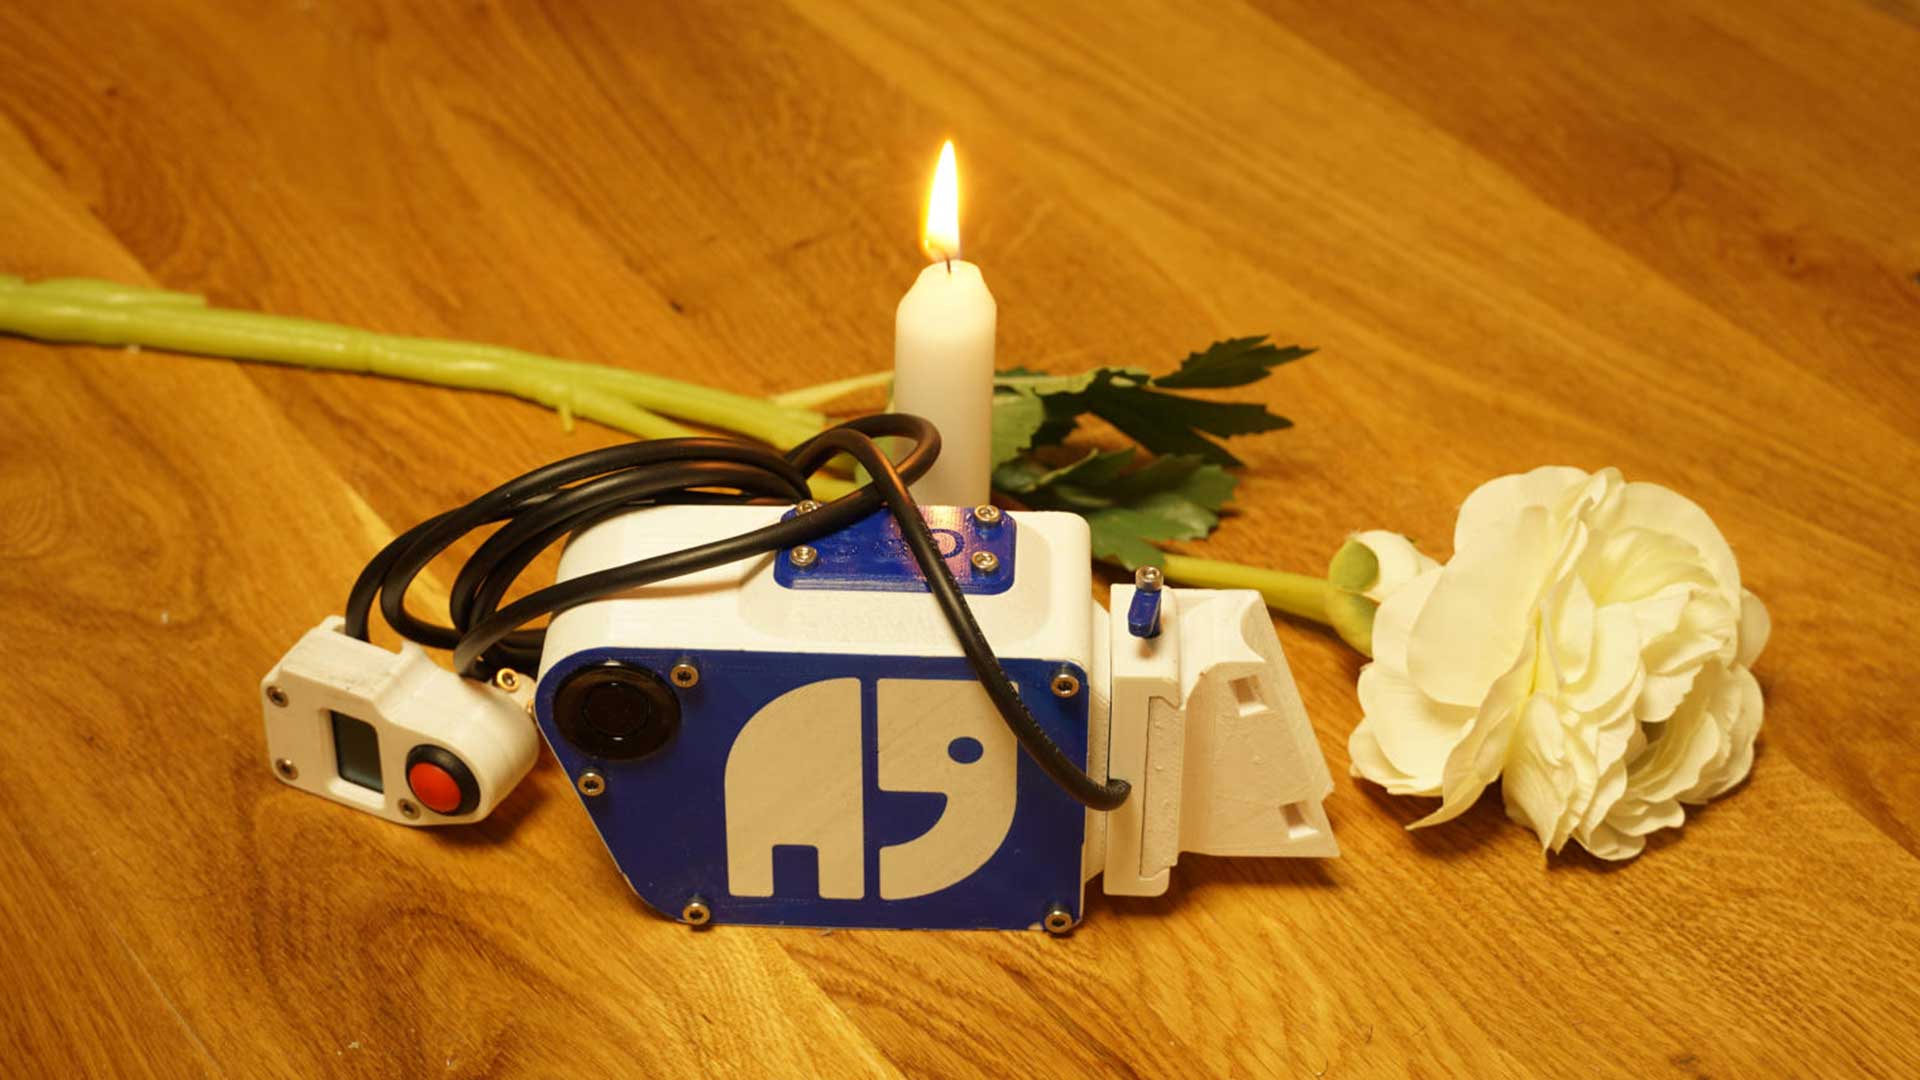 Holz-Tisch mit einer brennenden Kerze und einer weißen Rose. Davor liegt ein Gerät zur Abstands-Messung vom Projekt OpenBikeSensor. Es ist das persönliche Gerät von Andreas Mandalka aka Natenom und trägt daher sein Logo.